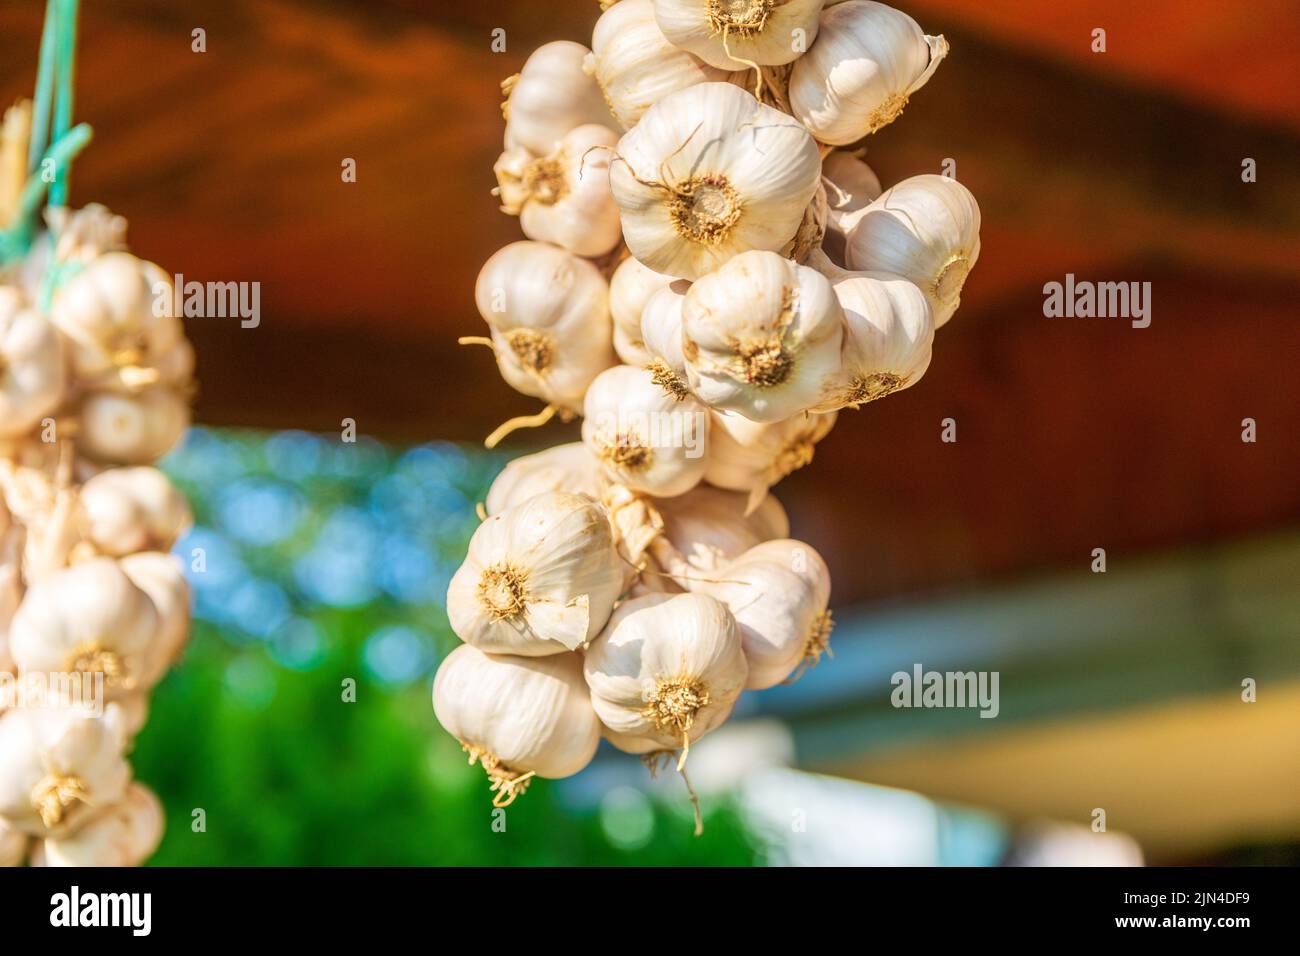 Il primo piano di trecce di aglio con bulbi interi intrecciati insieme dai gambi Foto Stock